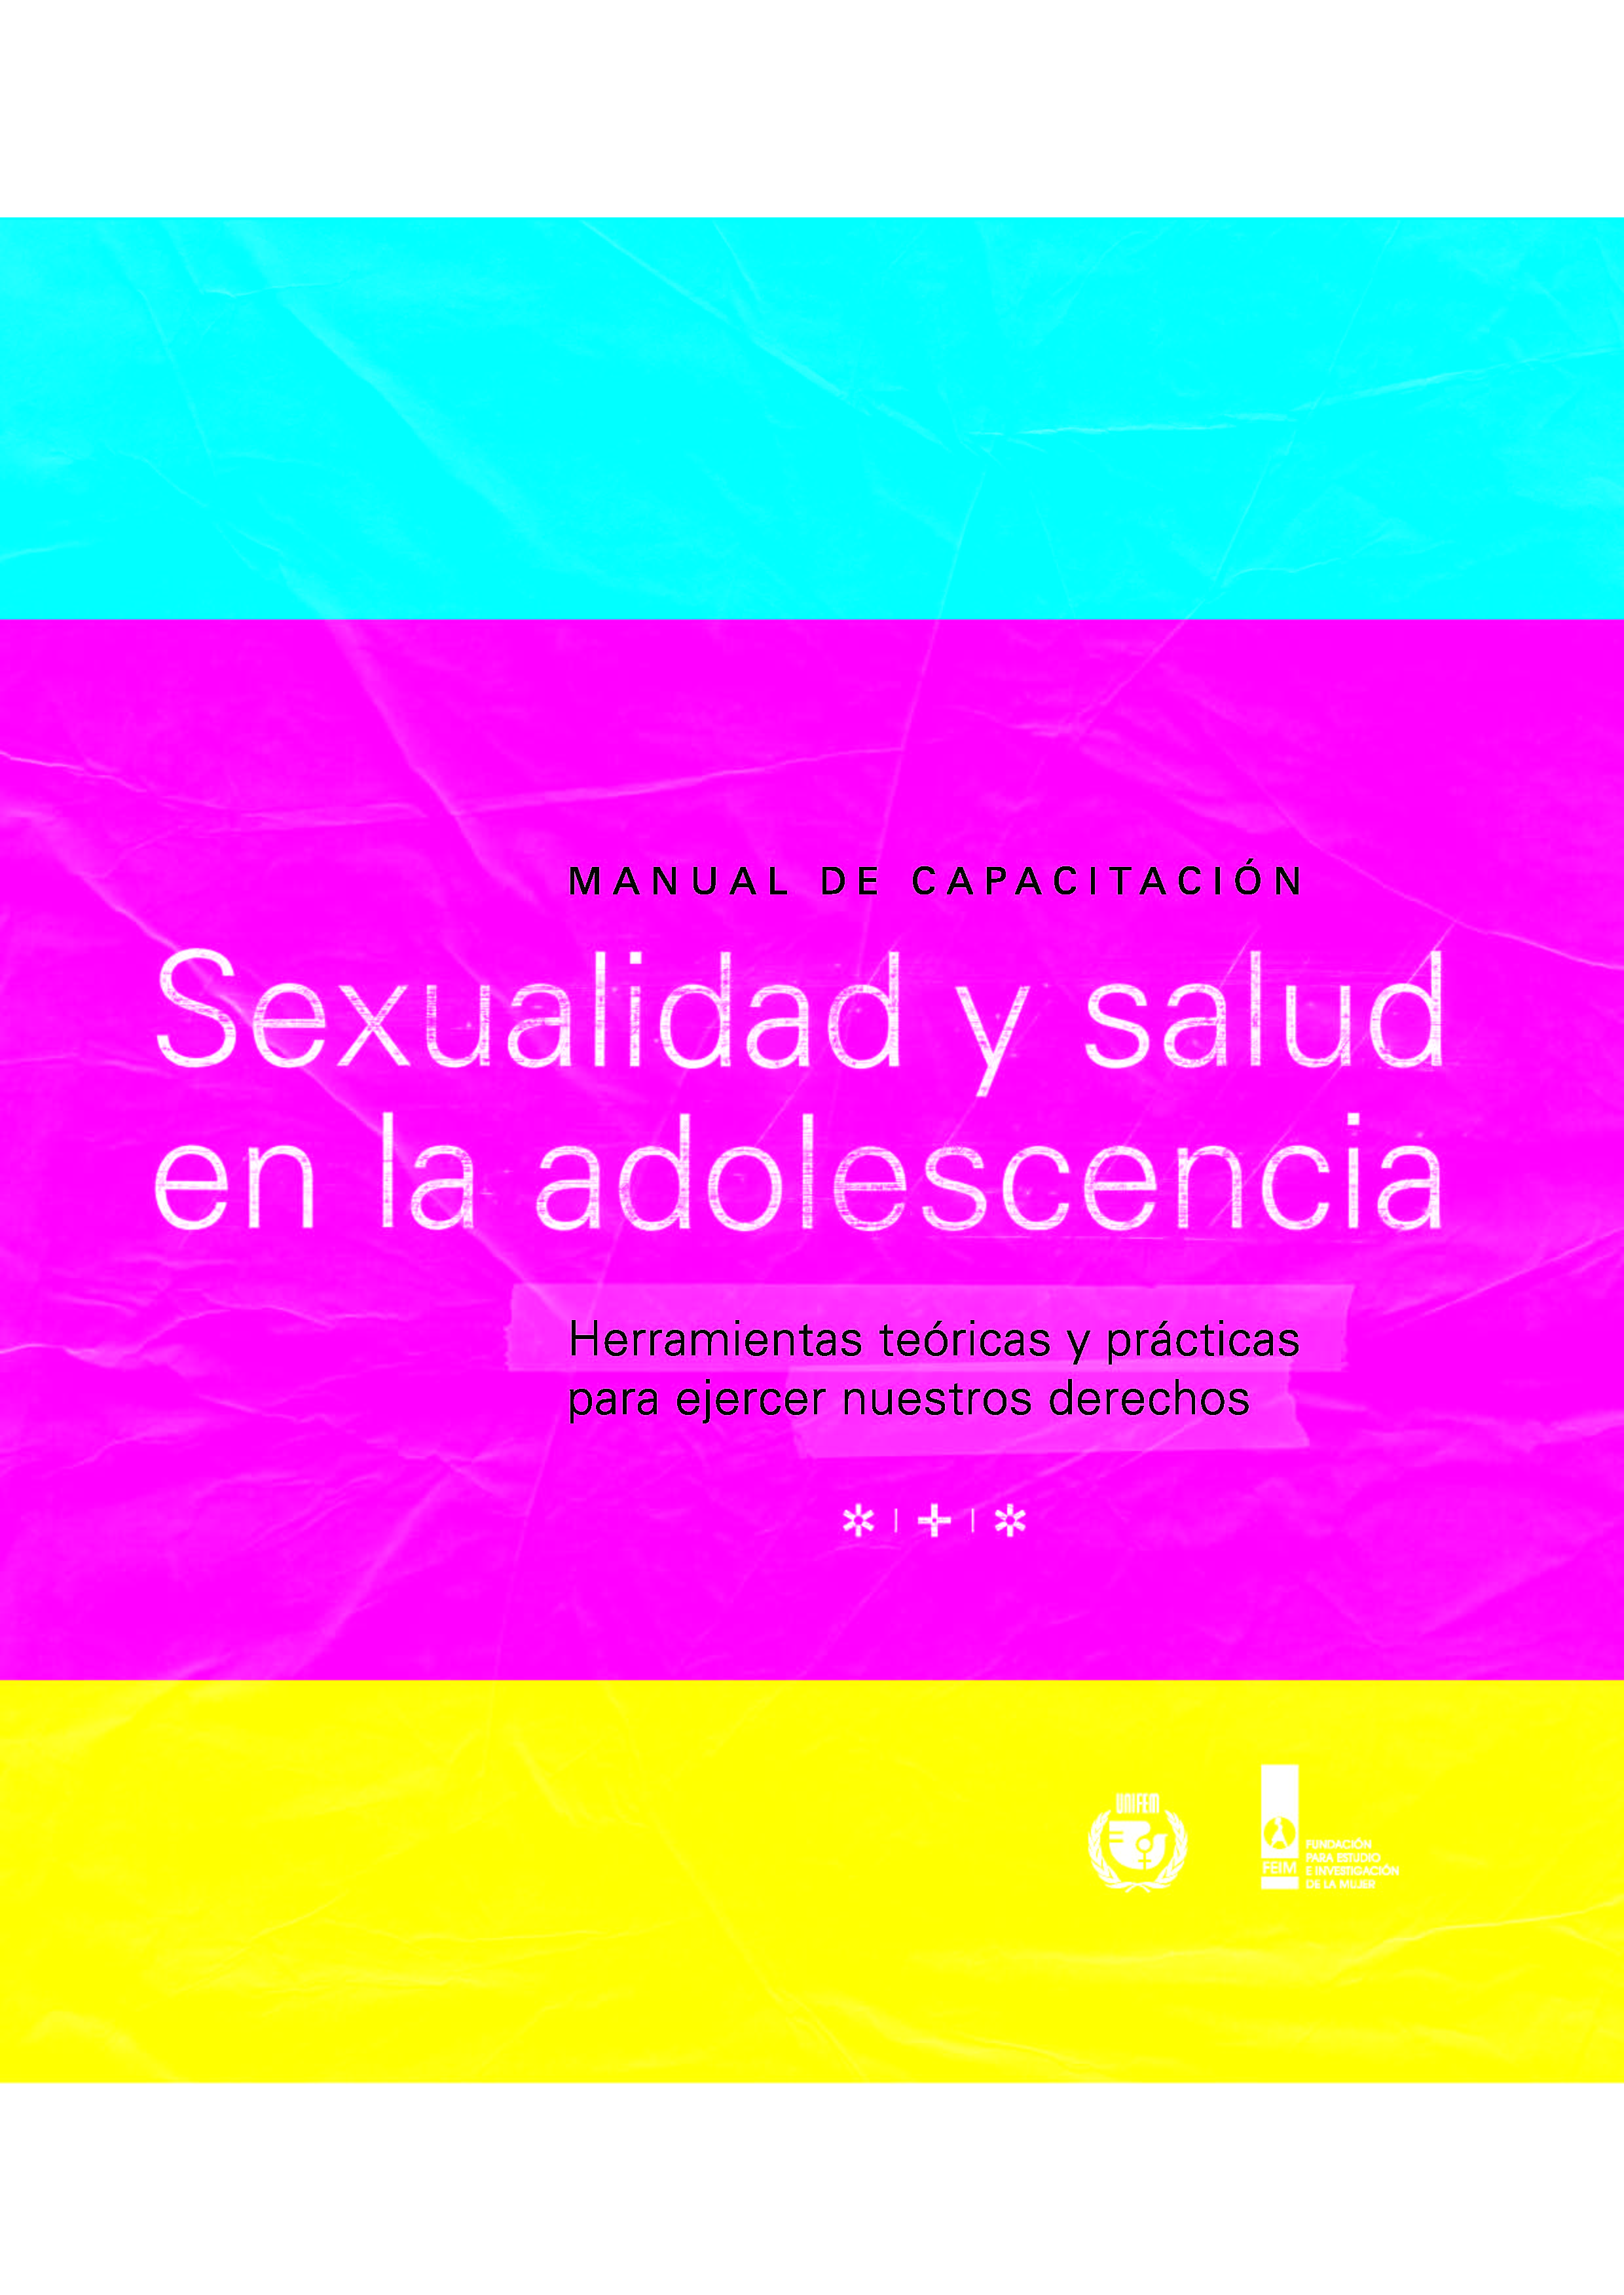 Sexualidad y salud en la adolescencia herramientas teóricas y prácticas para ejercer nuestros